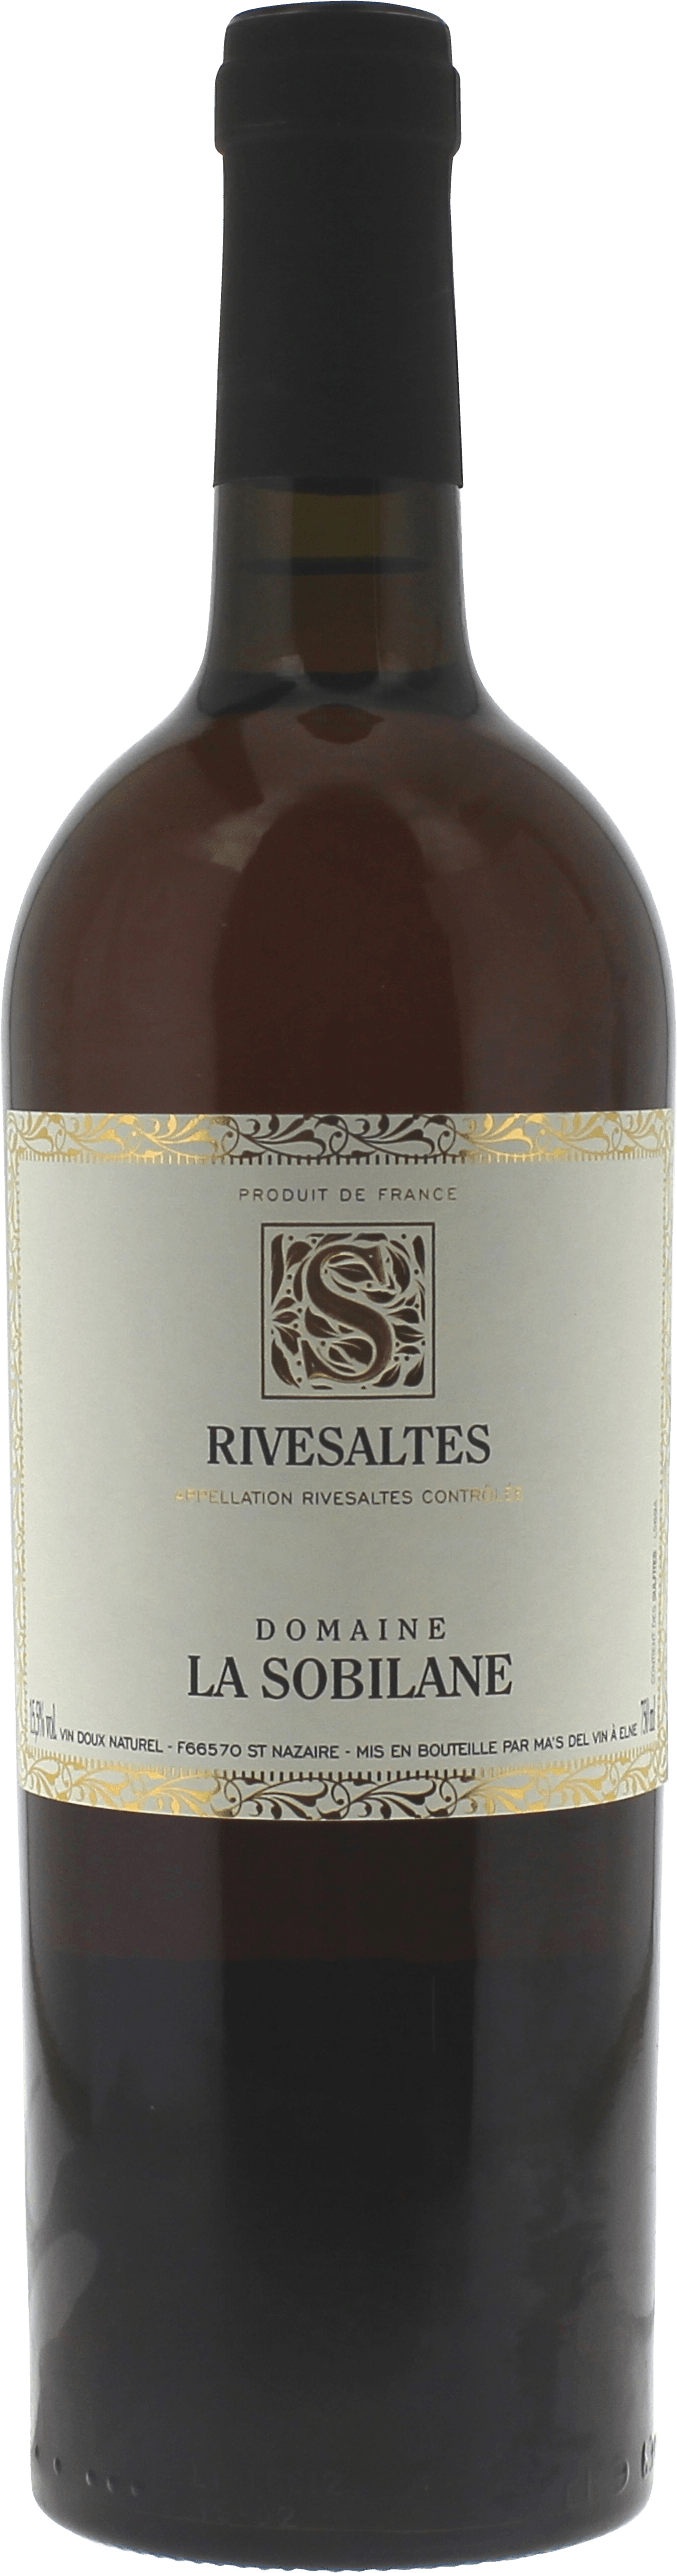 Rivesaltes domaine la sobilane 1969 Vin doux naturel Rivesaltes, Vin doux naturel